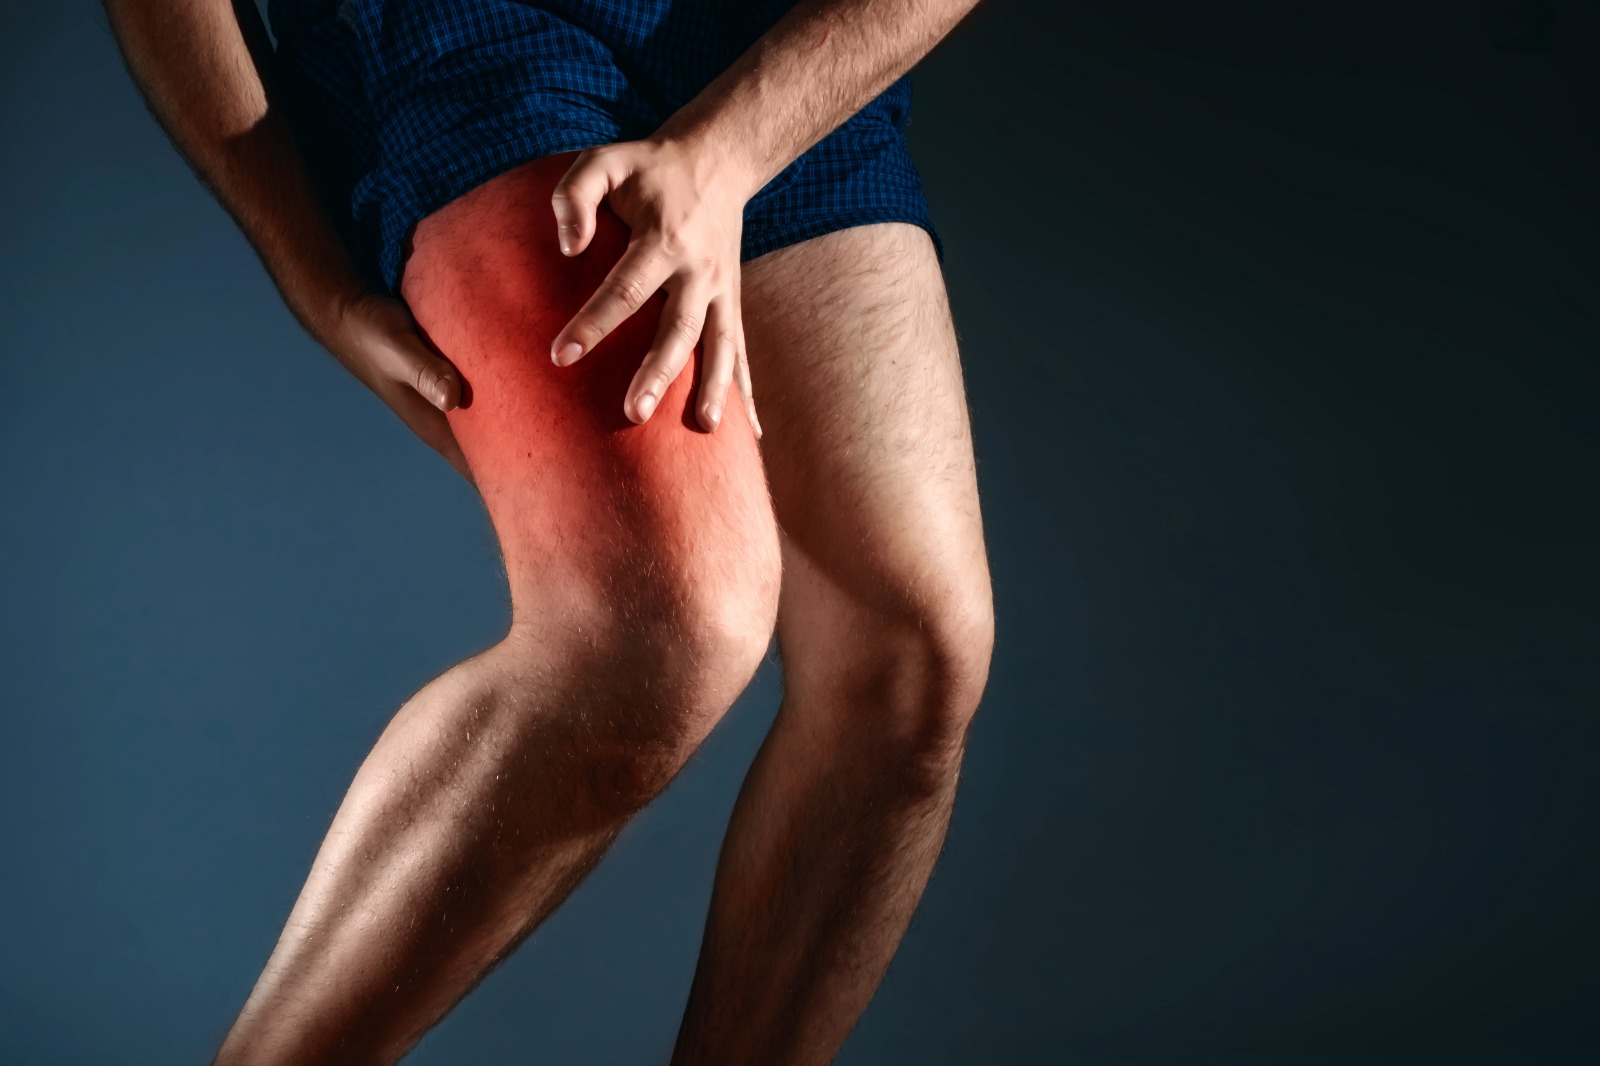 Espasmos musculares - por qué dan calambres en las piernas